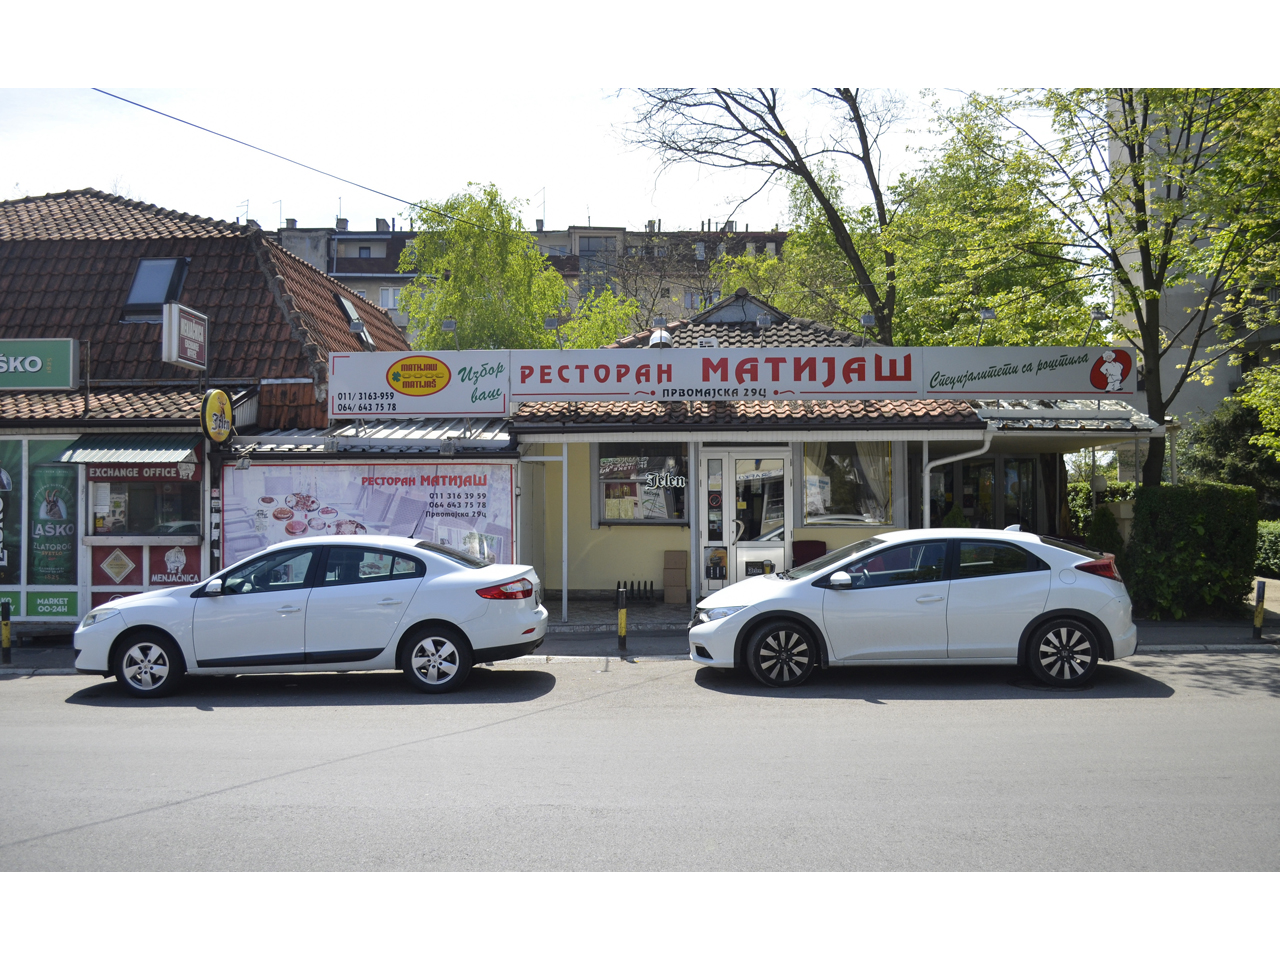 RESTORAN MATIJAŠ Domaća kuhinja Beograd - Slika 1